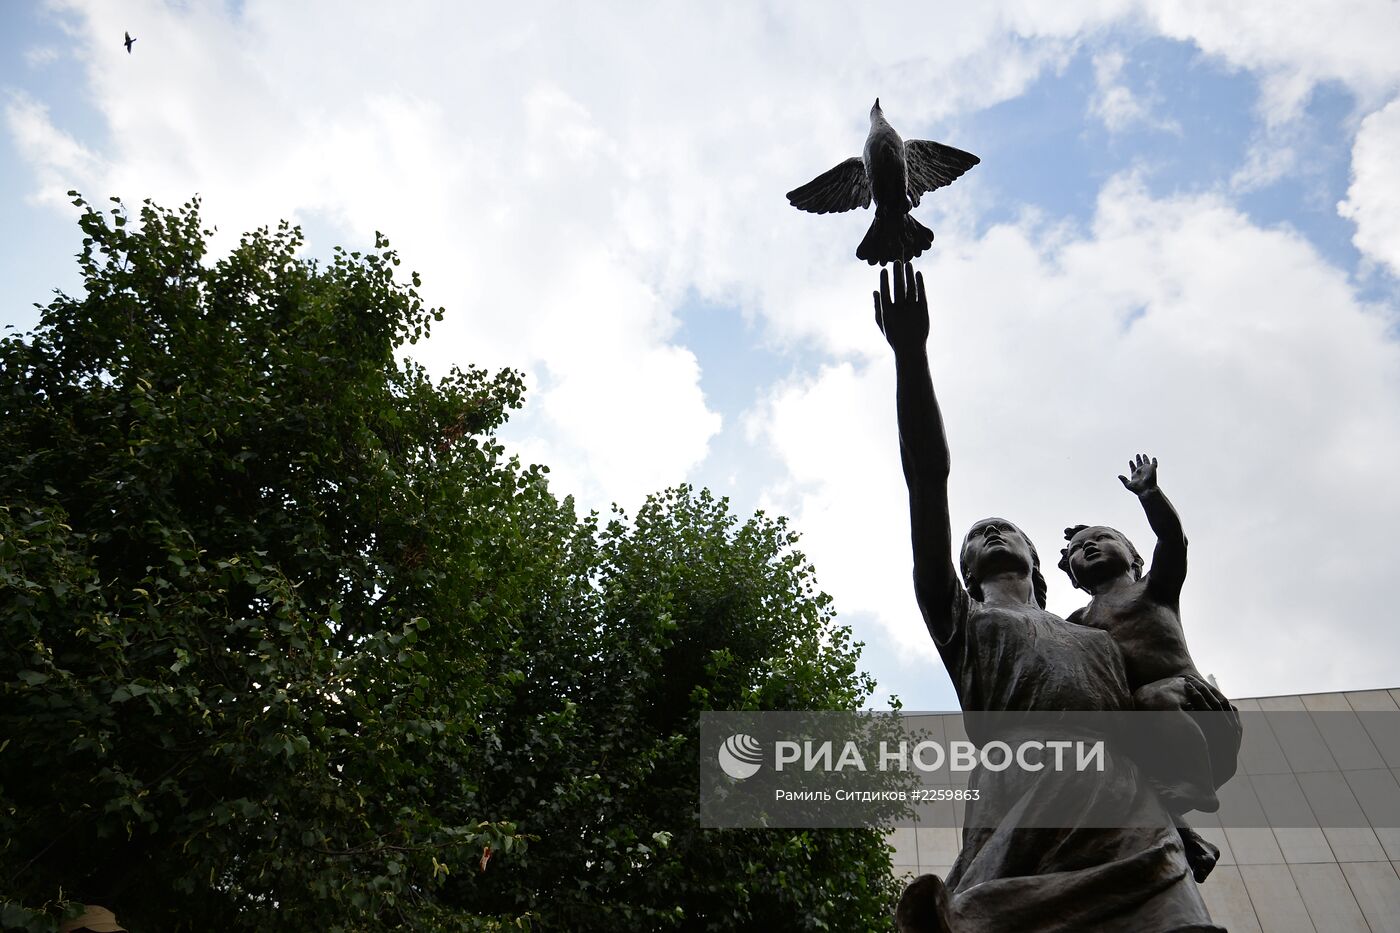 Открытие памятника В.И.Мухиной "Требуем мира"